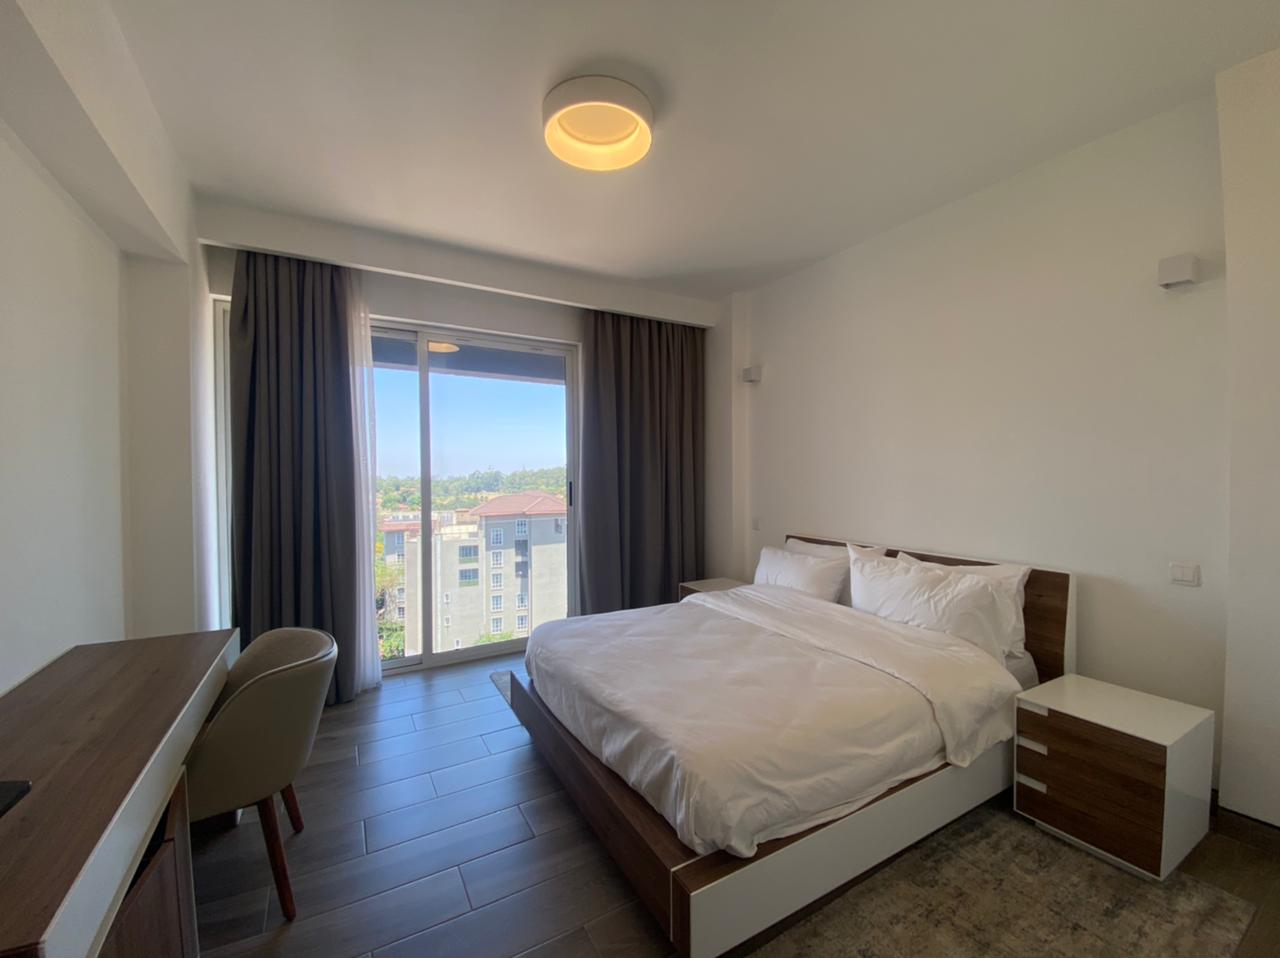 3 Bedroom Tastefully Furnished Apartment in Kilimani For Rent at Ksh265k (6)